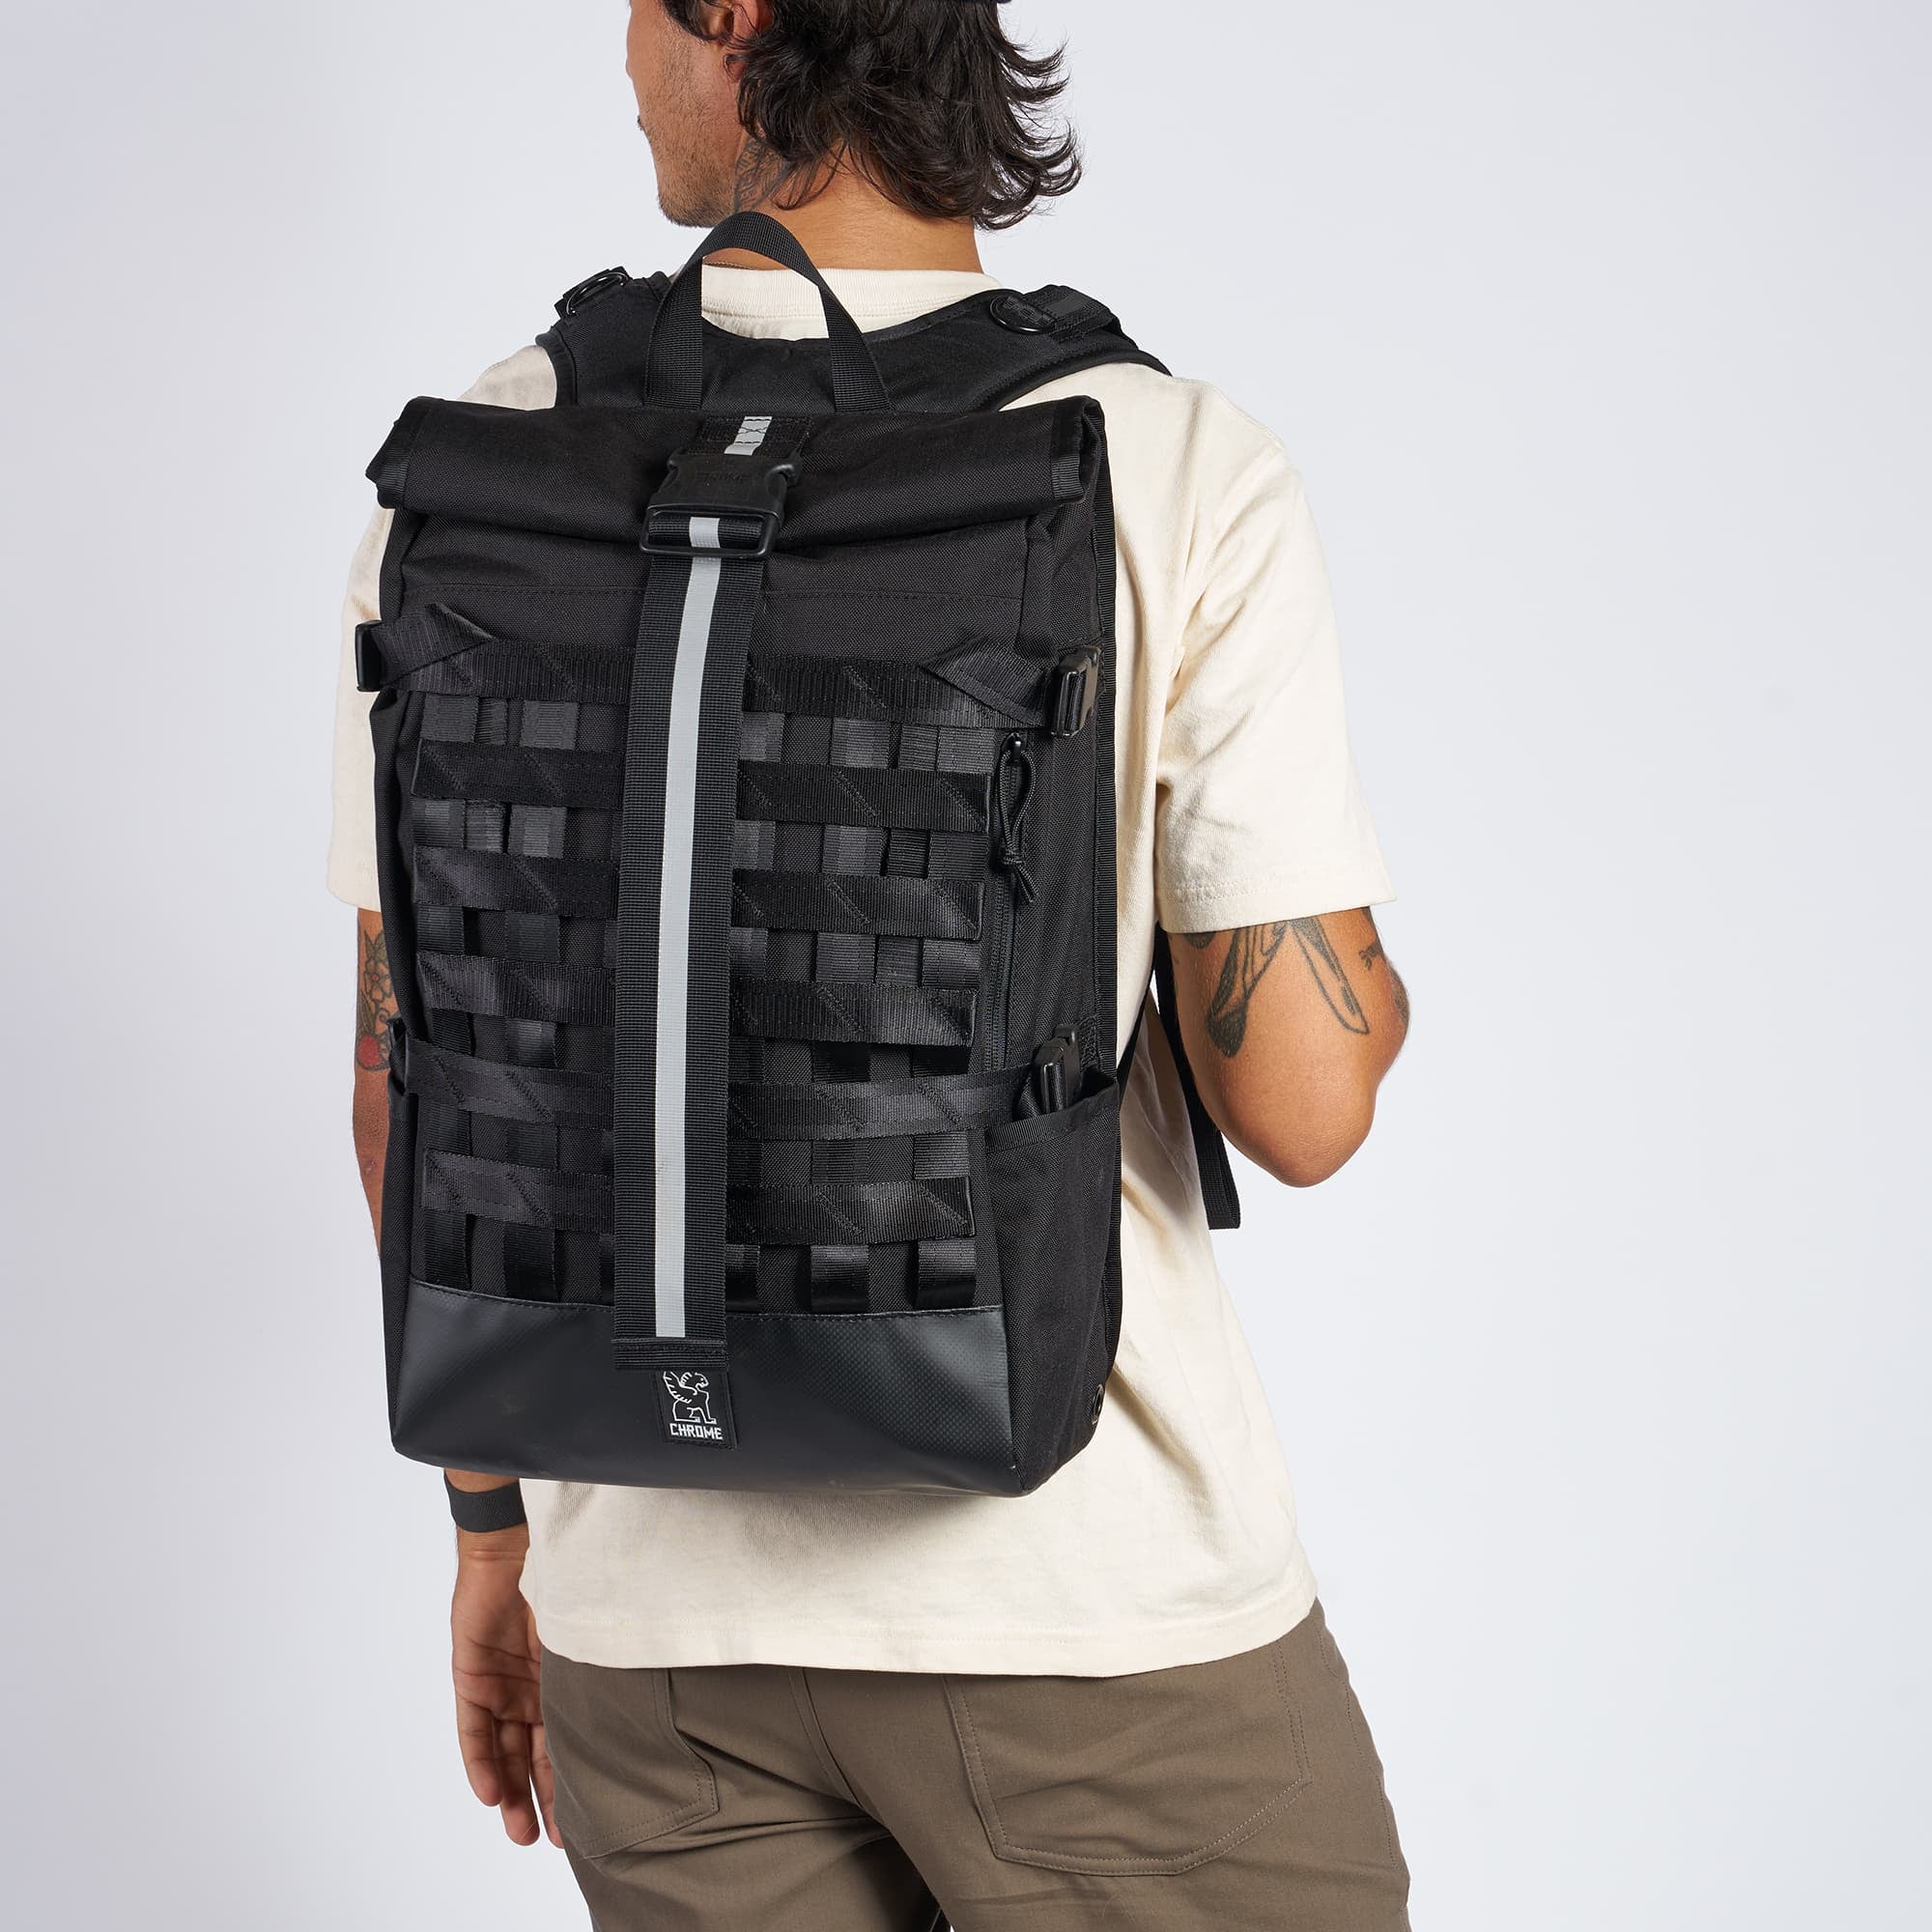 Black Barrage Cargo Backpack on a man